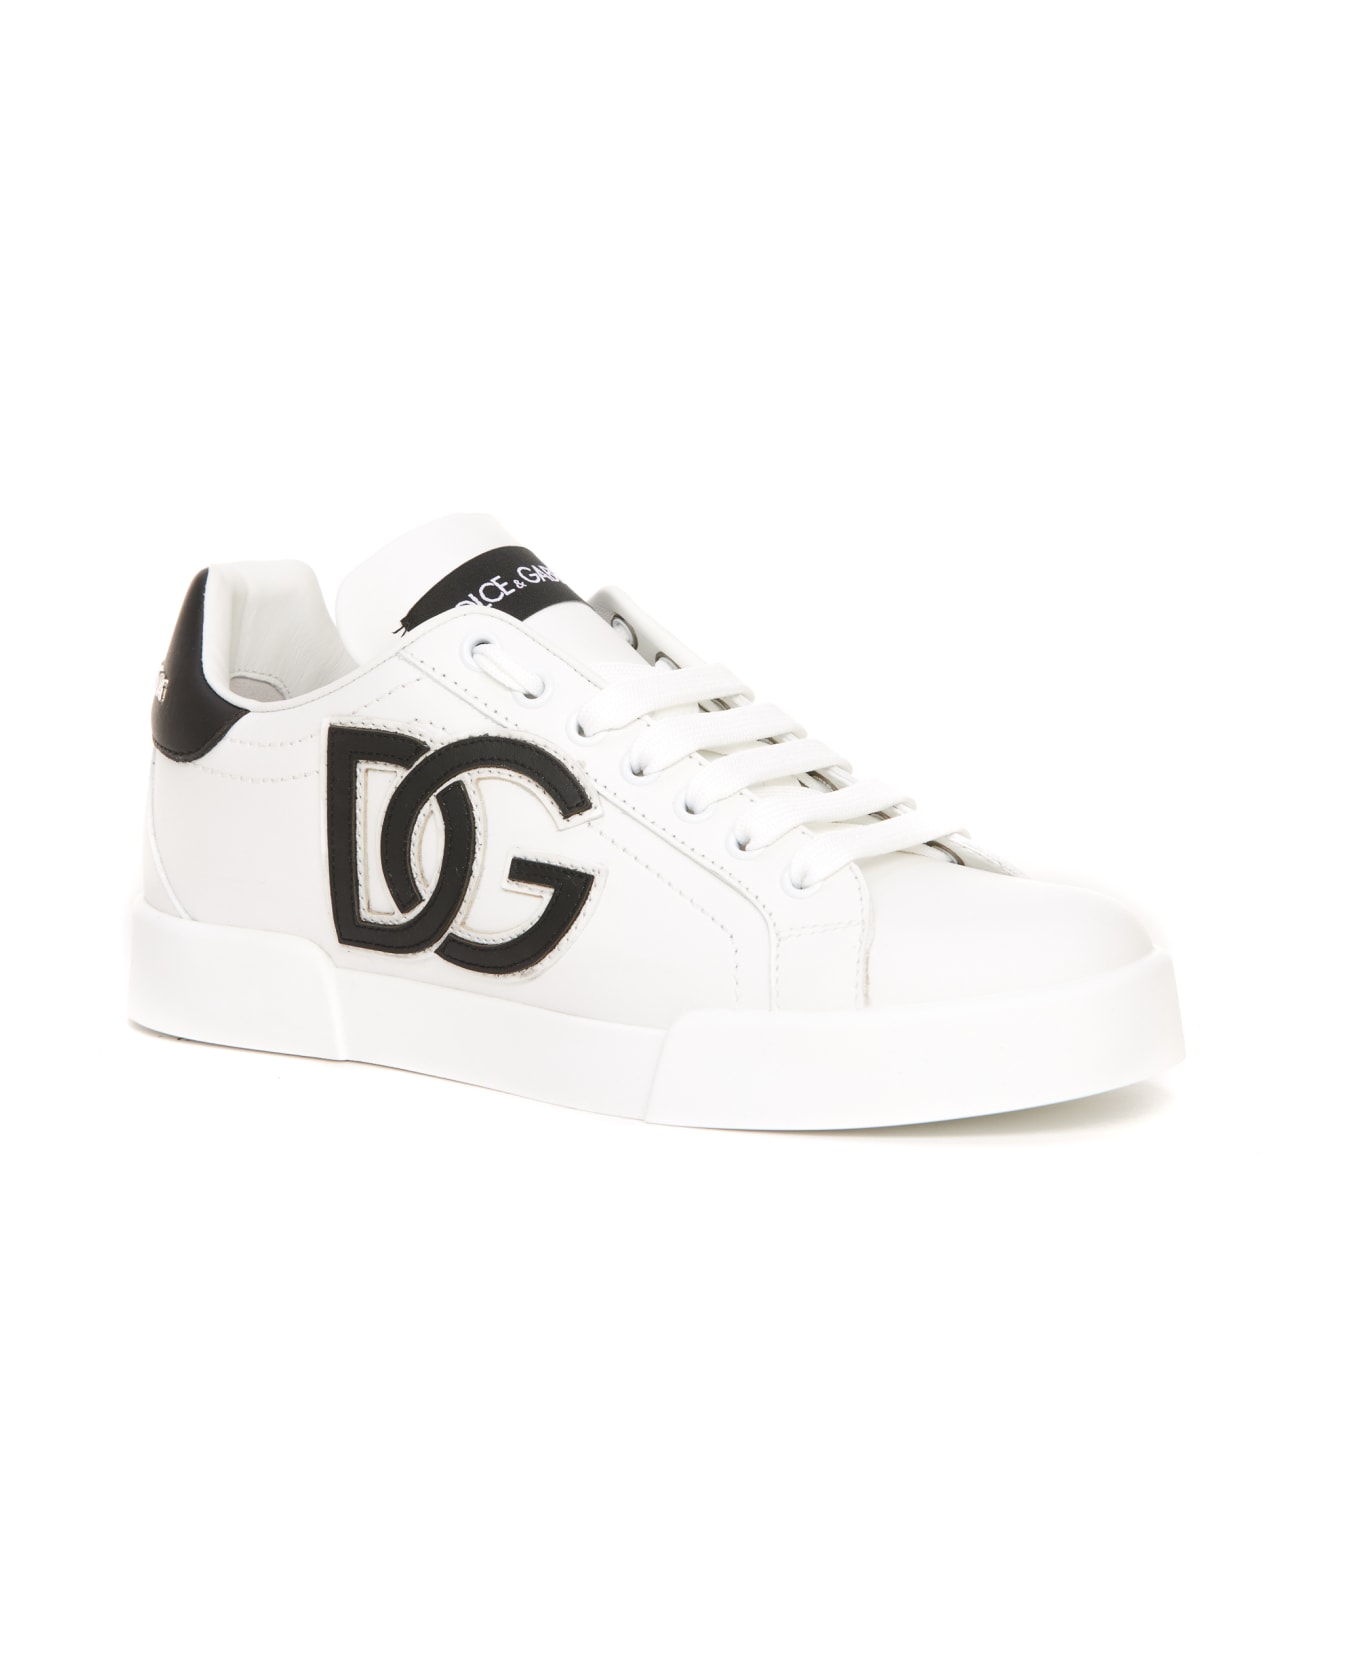 Dolce & Gabbana Portofino Sneakers - Bianco/nero